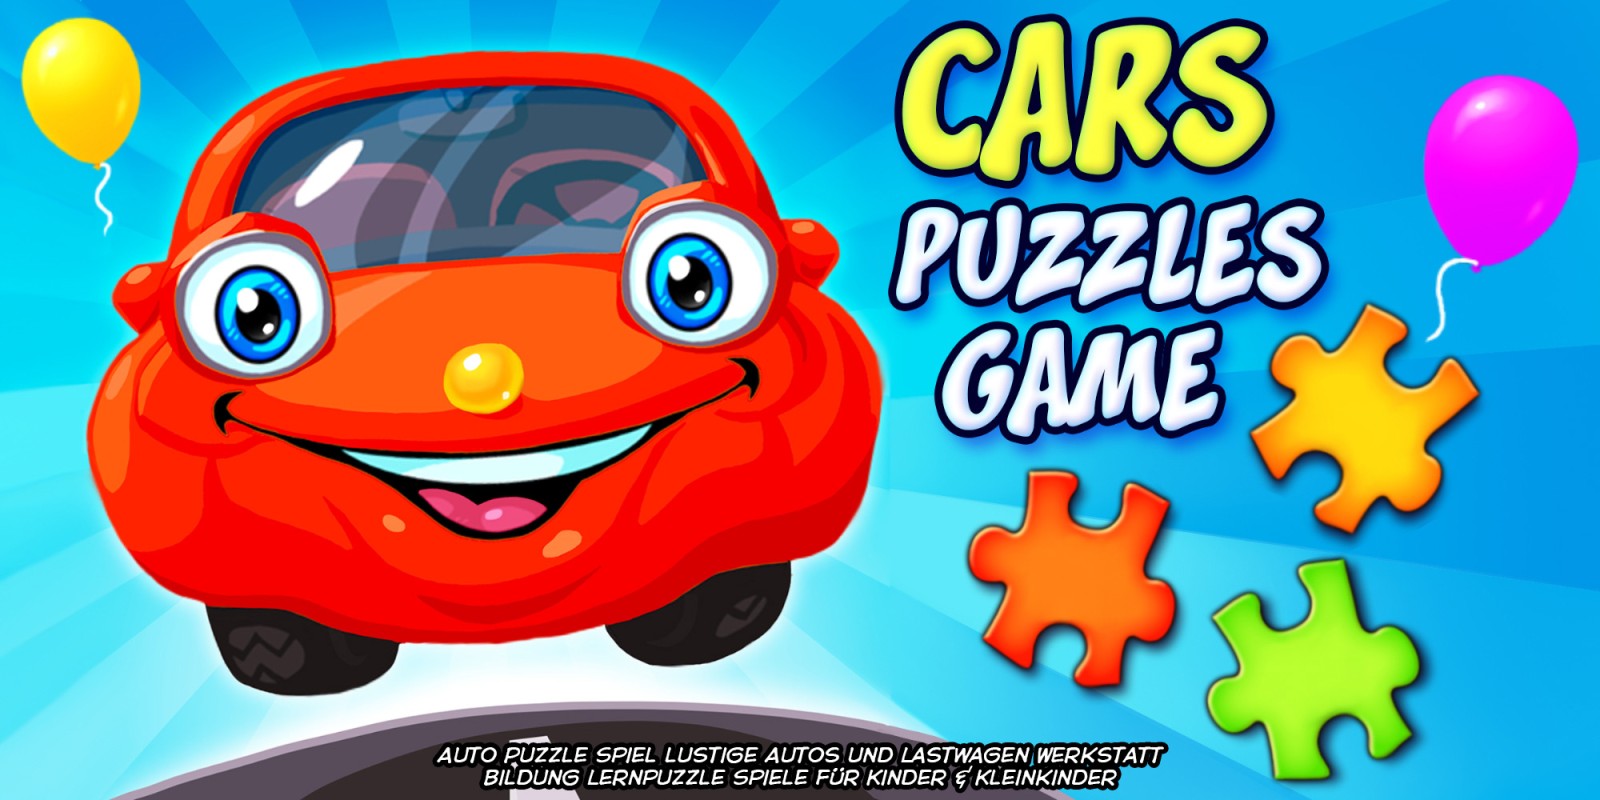 Cars Puzzles Game - Auto Puzzle Spiel lustige Autos und Lastwagen Werkstatt Bildung Lernpuzzle Spiele für Kinder & Kleinkinder